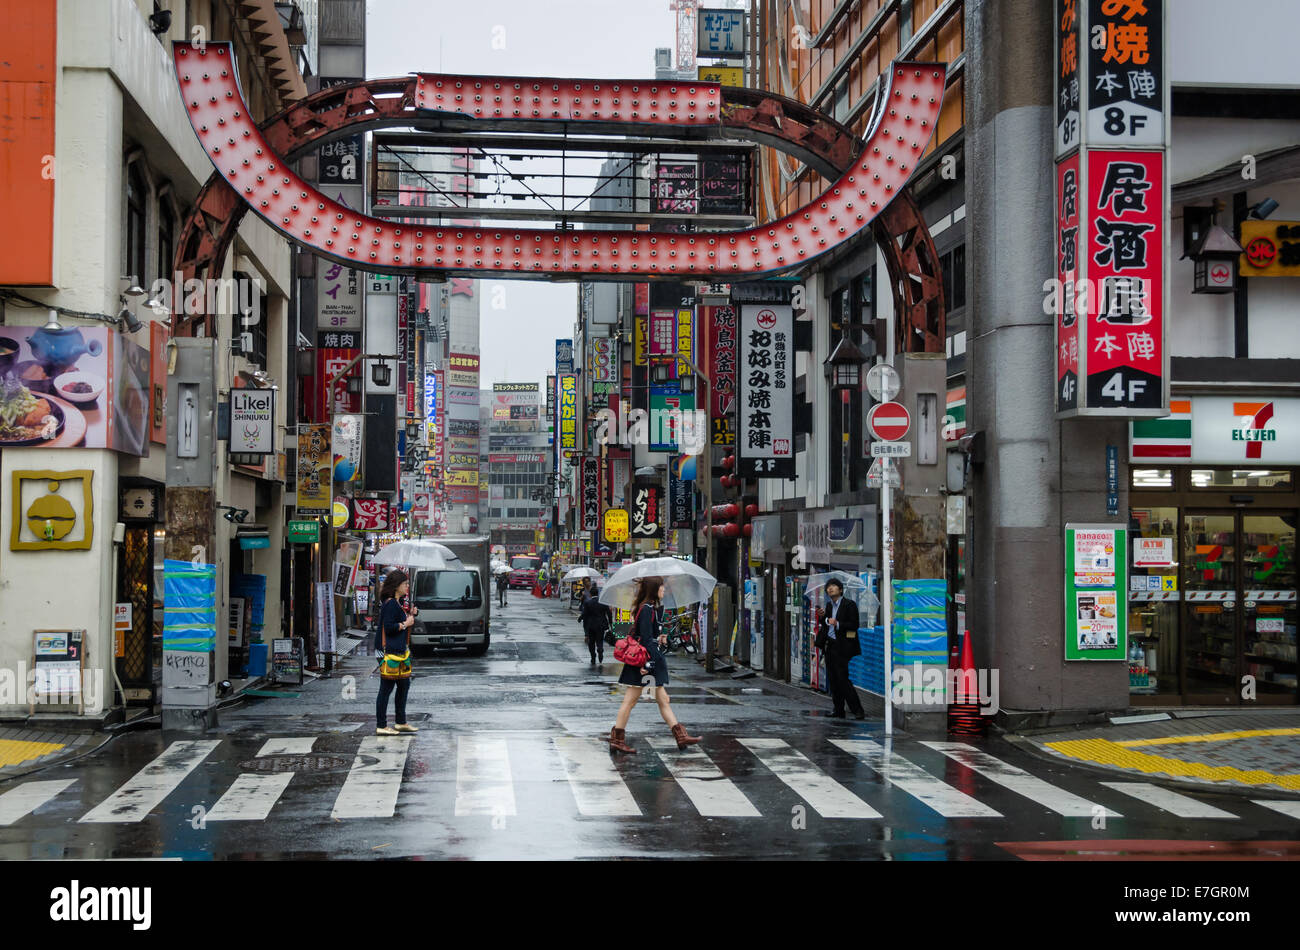 People walking under the rain in Kabukicho, red-light district of Shinjuku, Tokyo, Japan Stock Photo